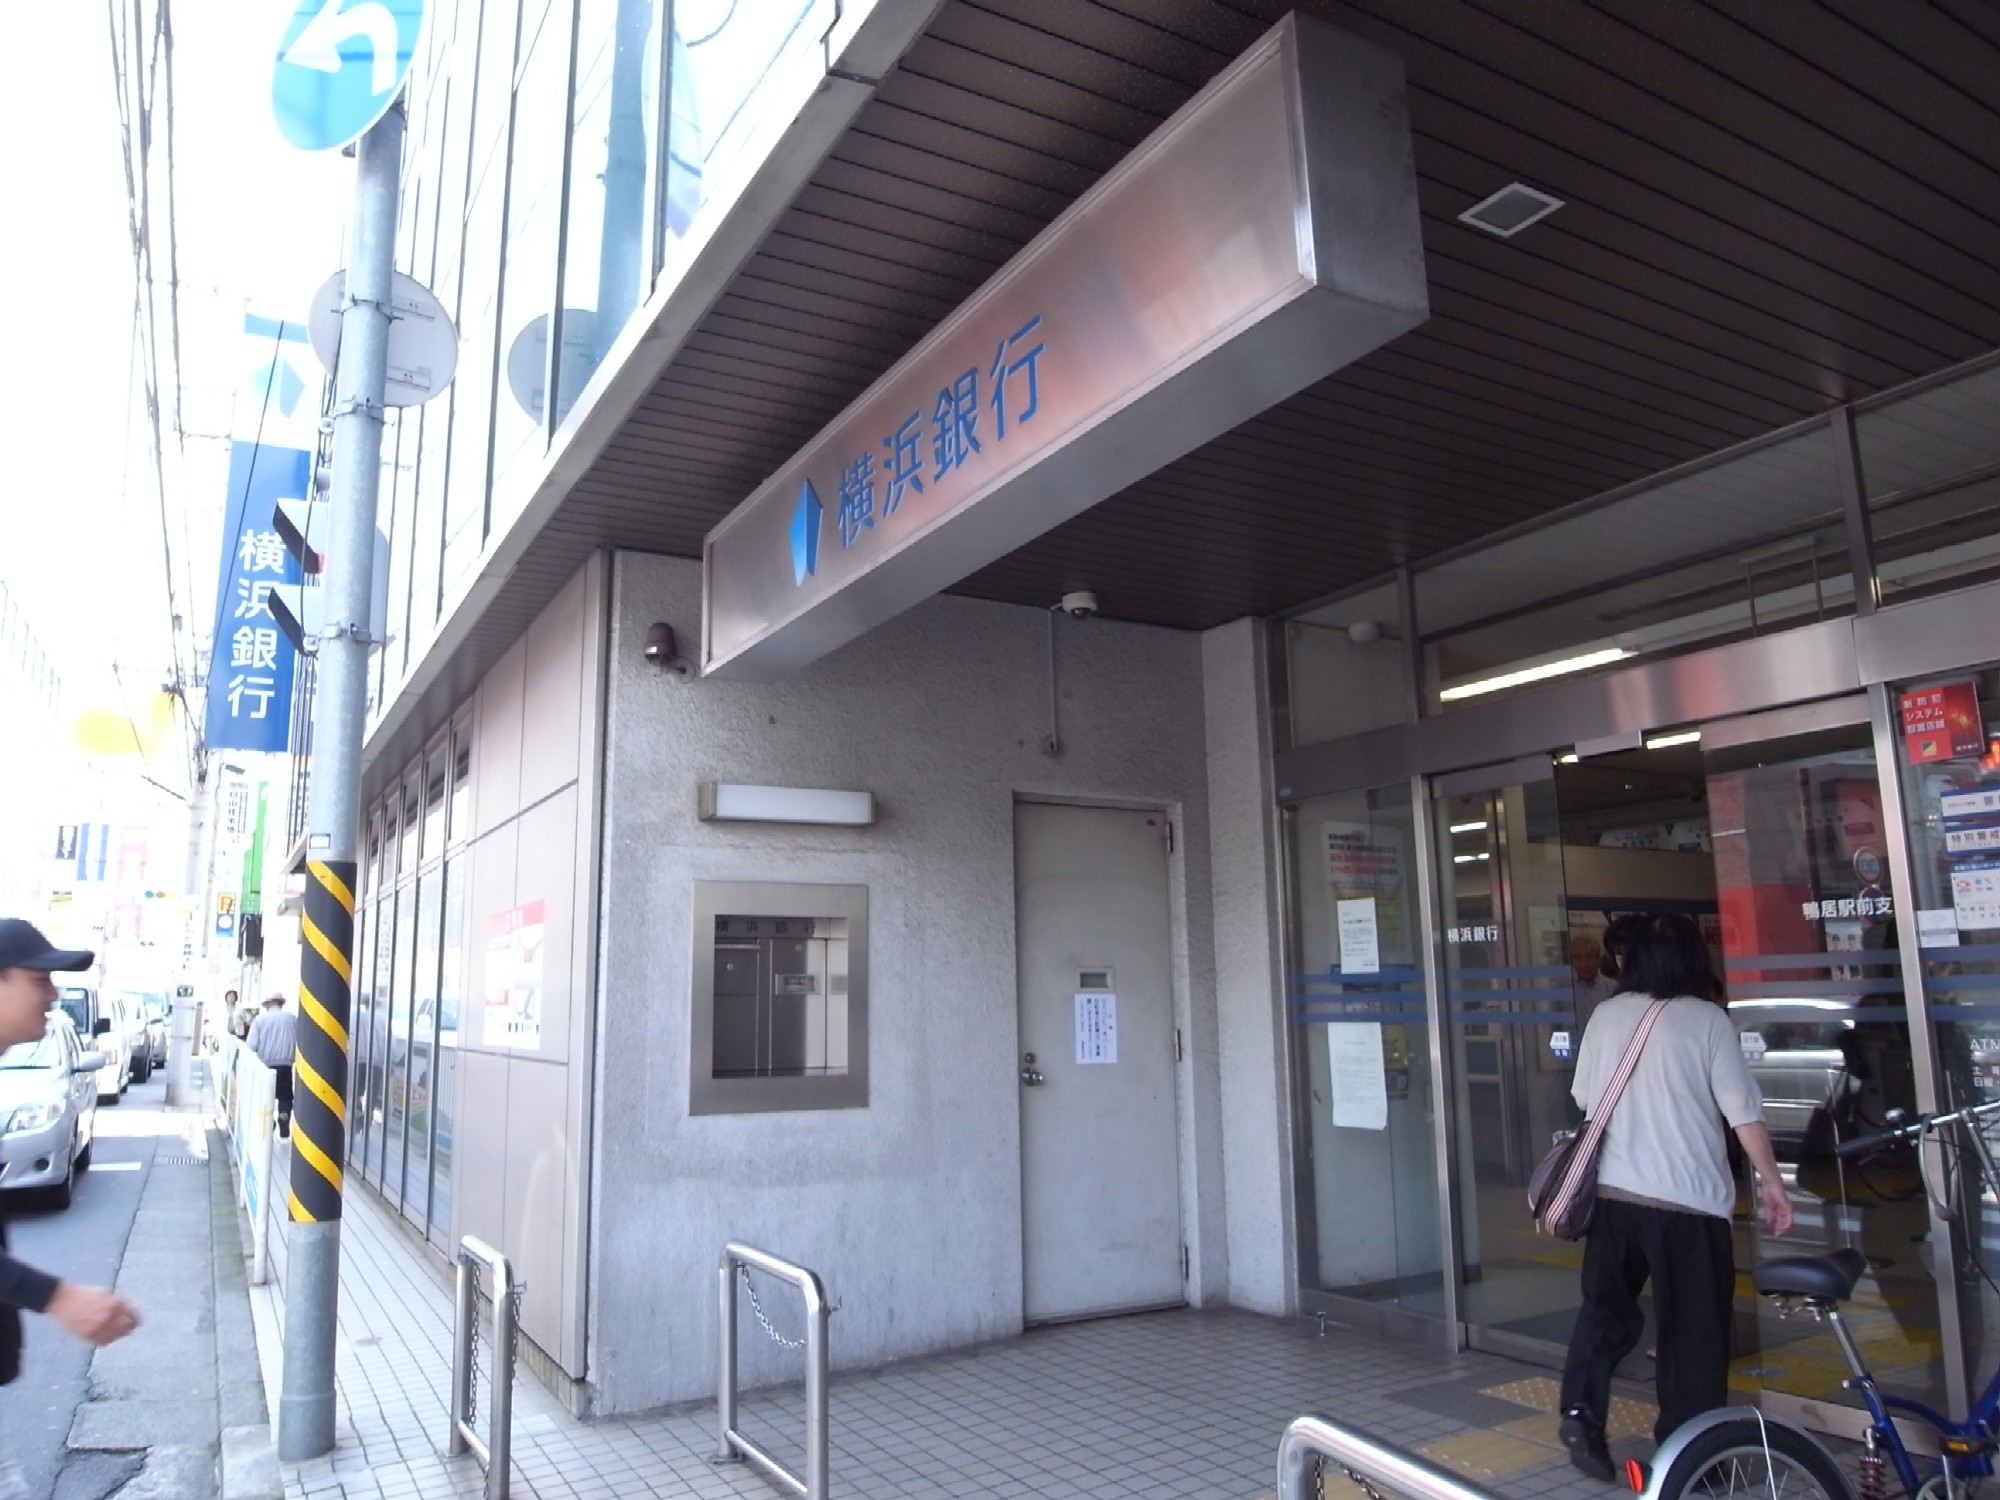 Bank. Bank of Yokohama lintel until Station Branch (Bank) 340m